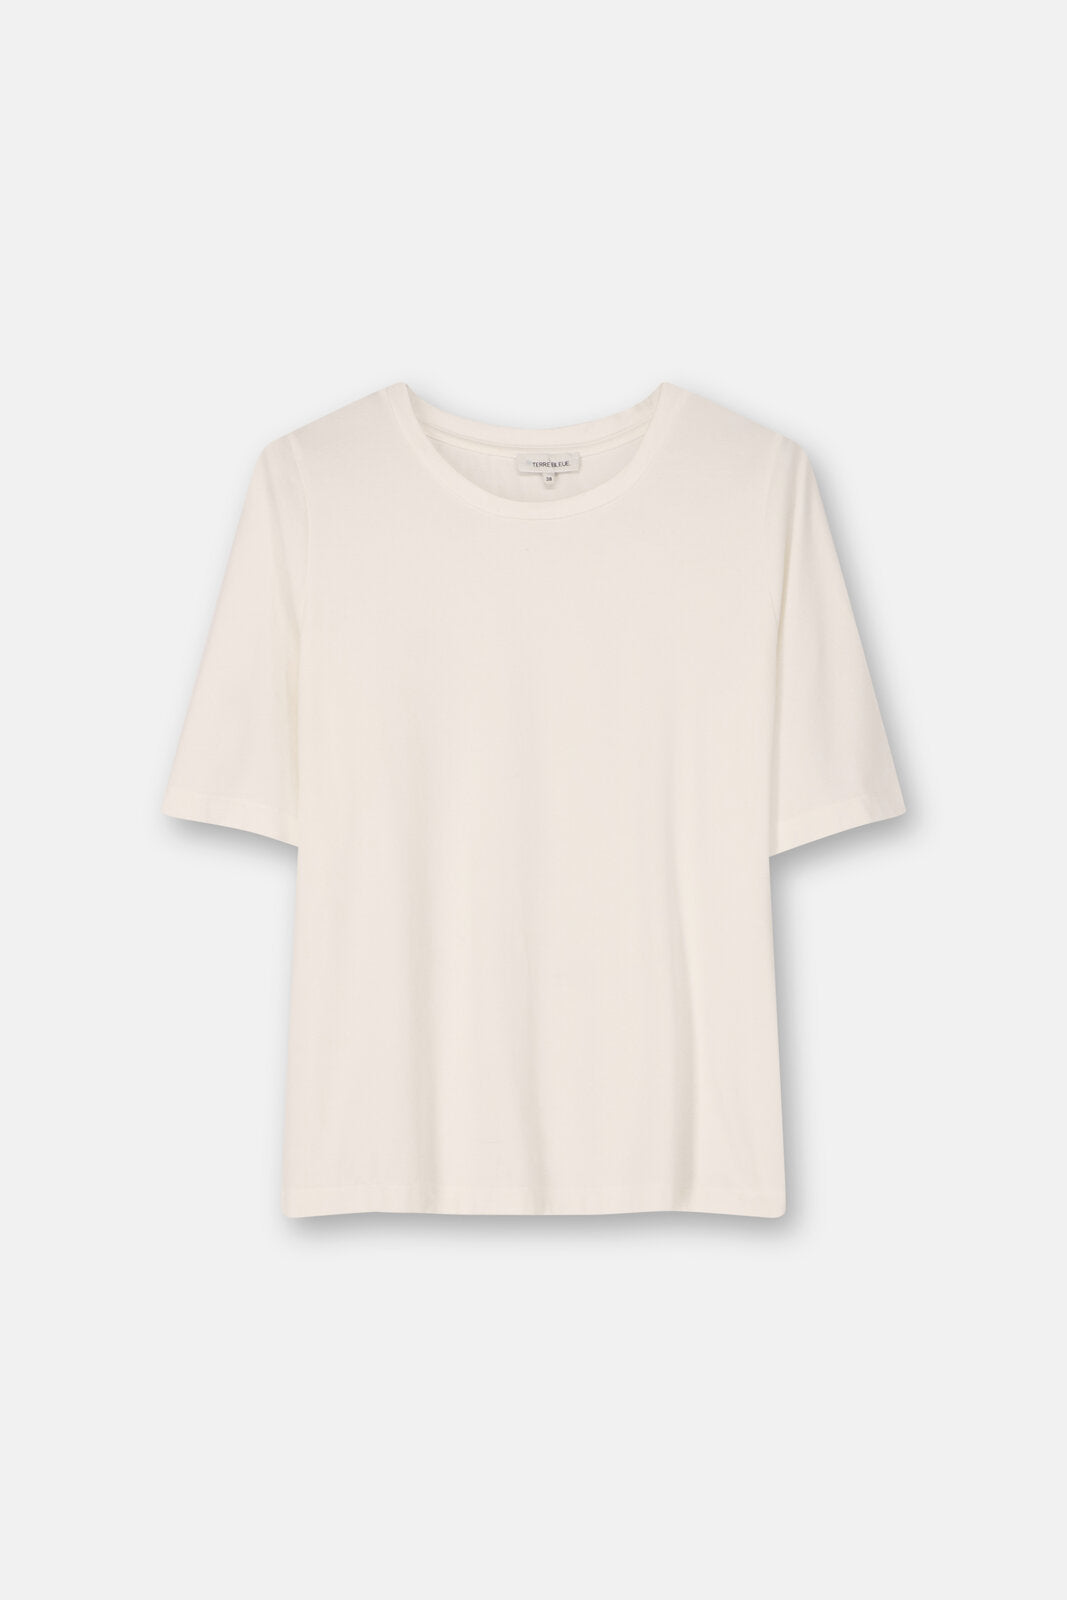 T-Shirt Ecru Terre Bleue ( Bea/001 )